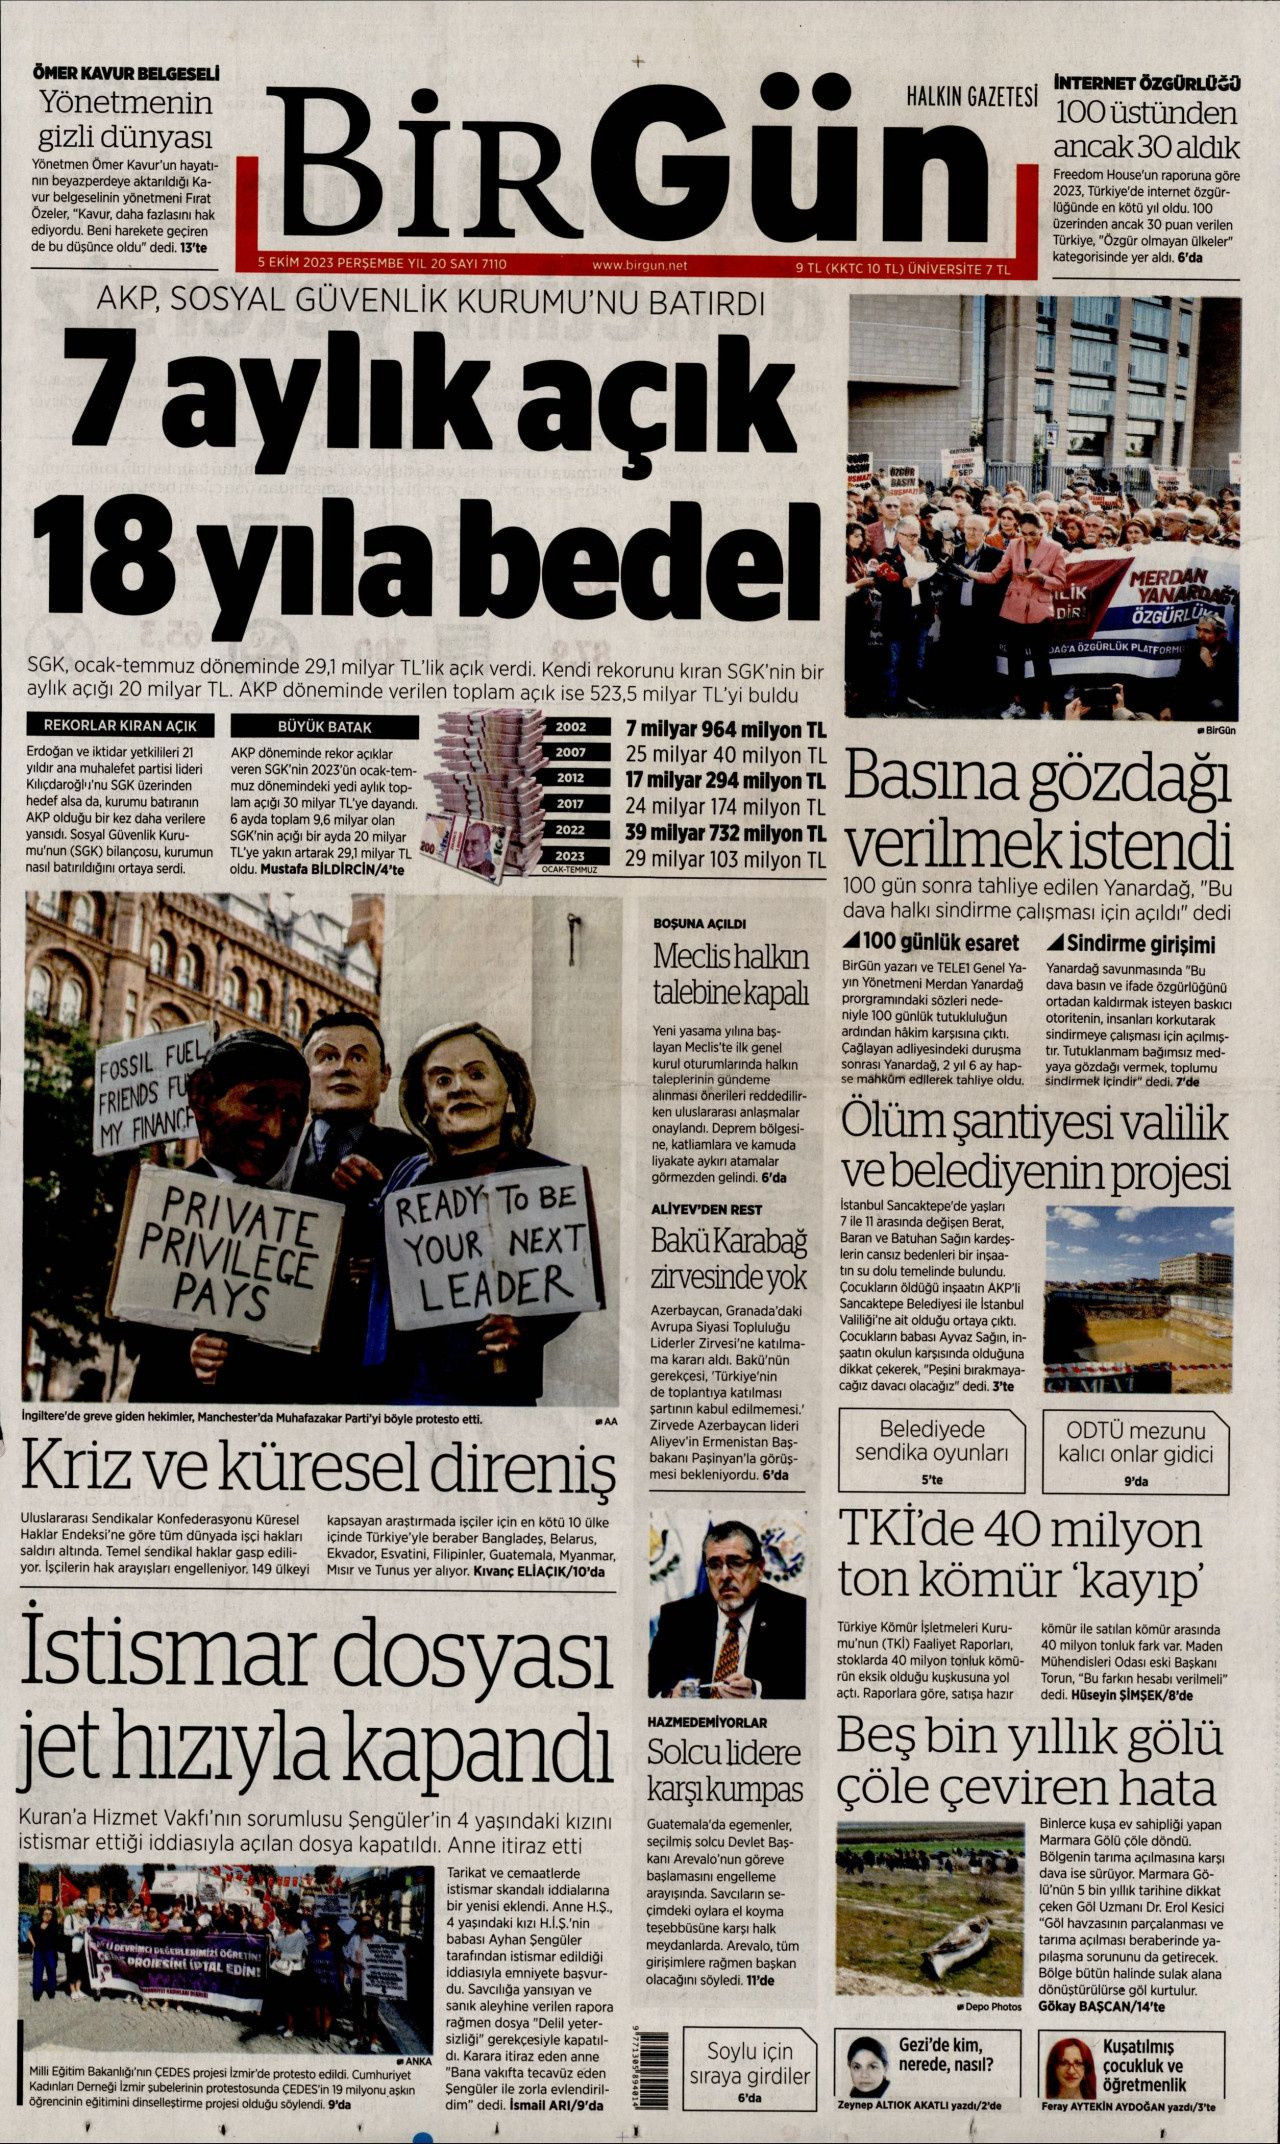 Günün manşetleri: 101 gün sonra gelen özgürlük - Sayfa 3